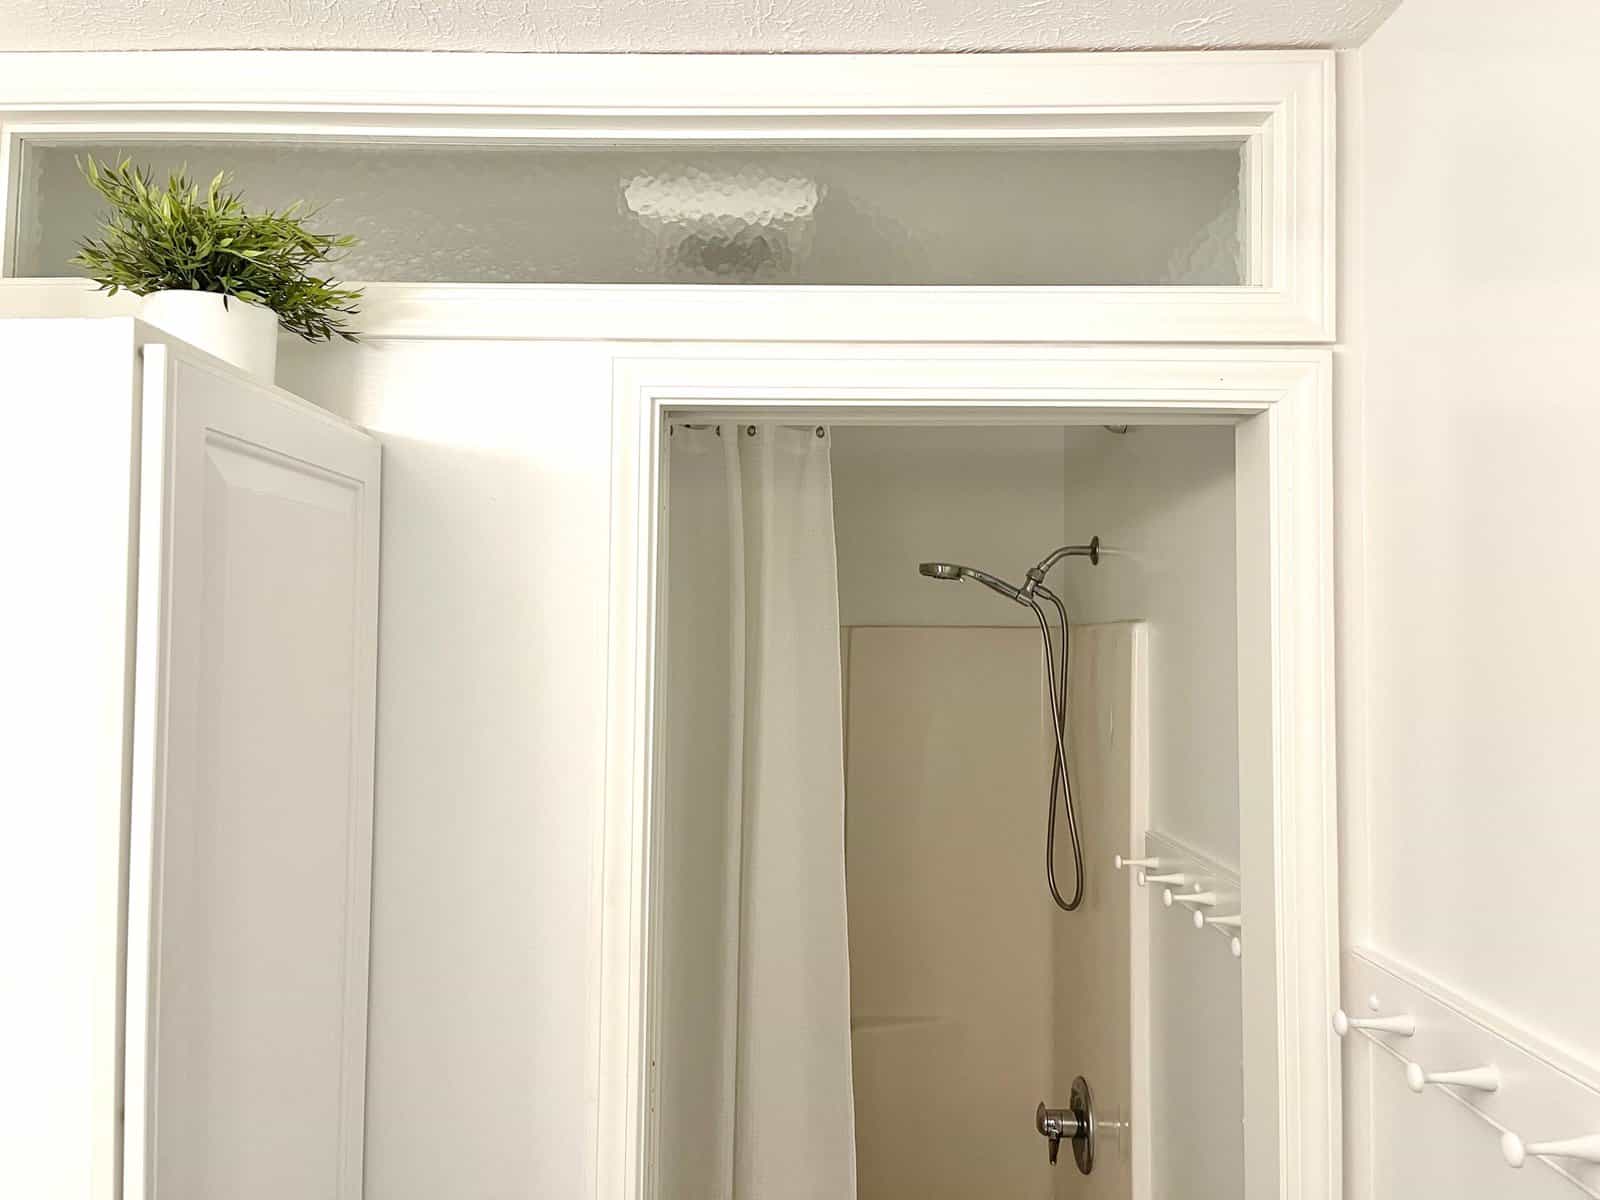 replacing shower glass door how to